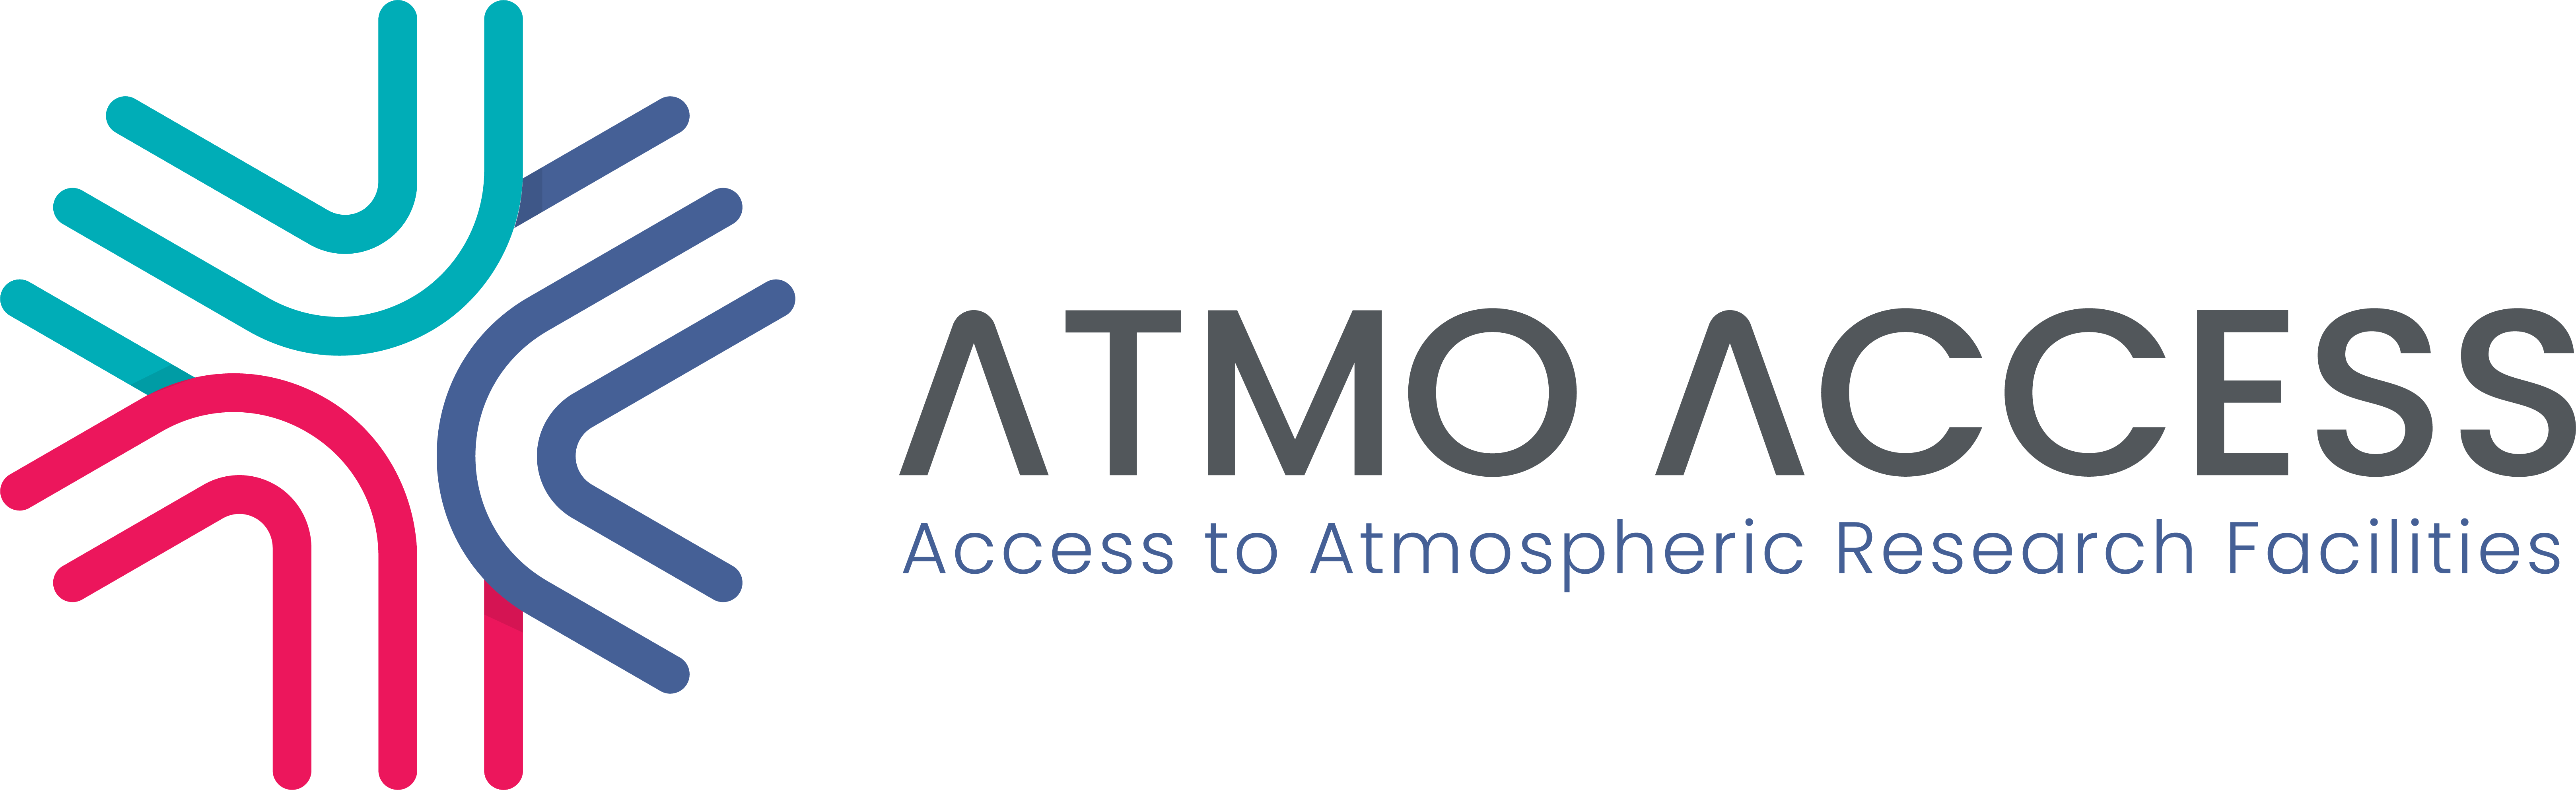 atmo access